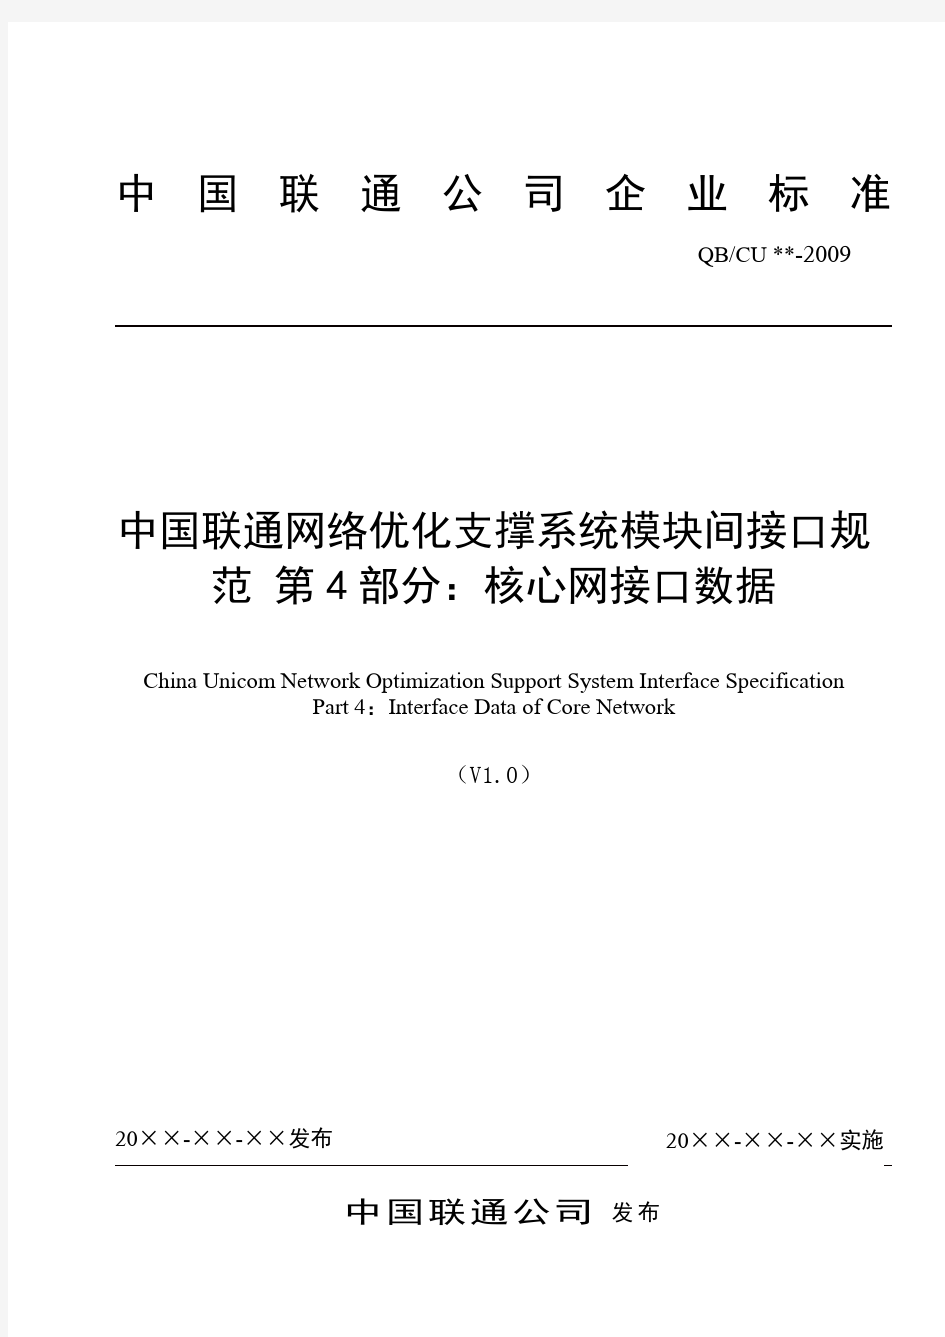 中国联通网络优化支撑系统模块间接口规范 第4部分：核心网接口数据